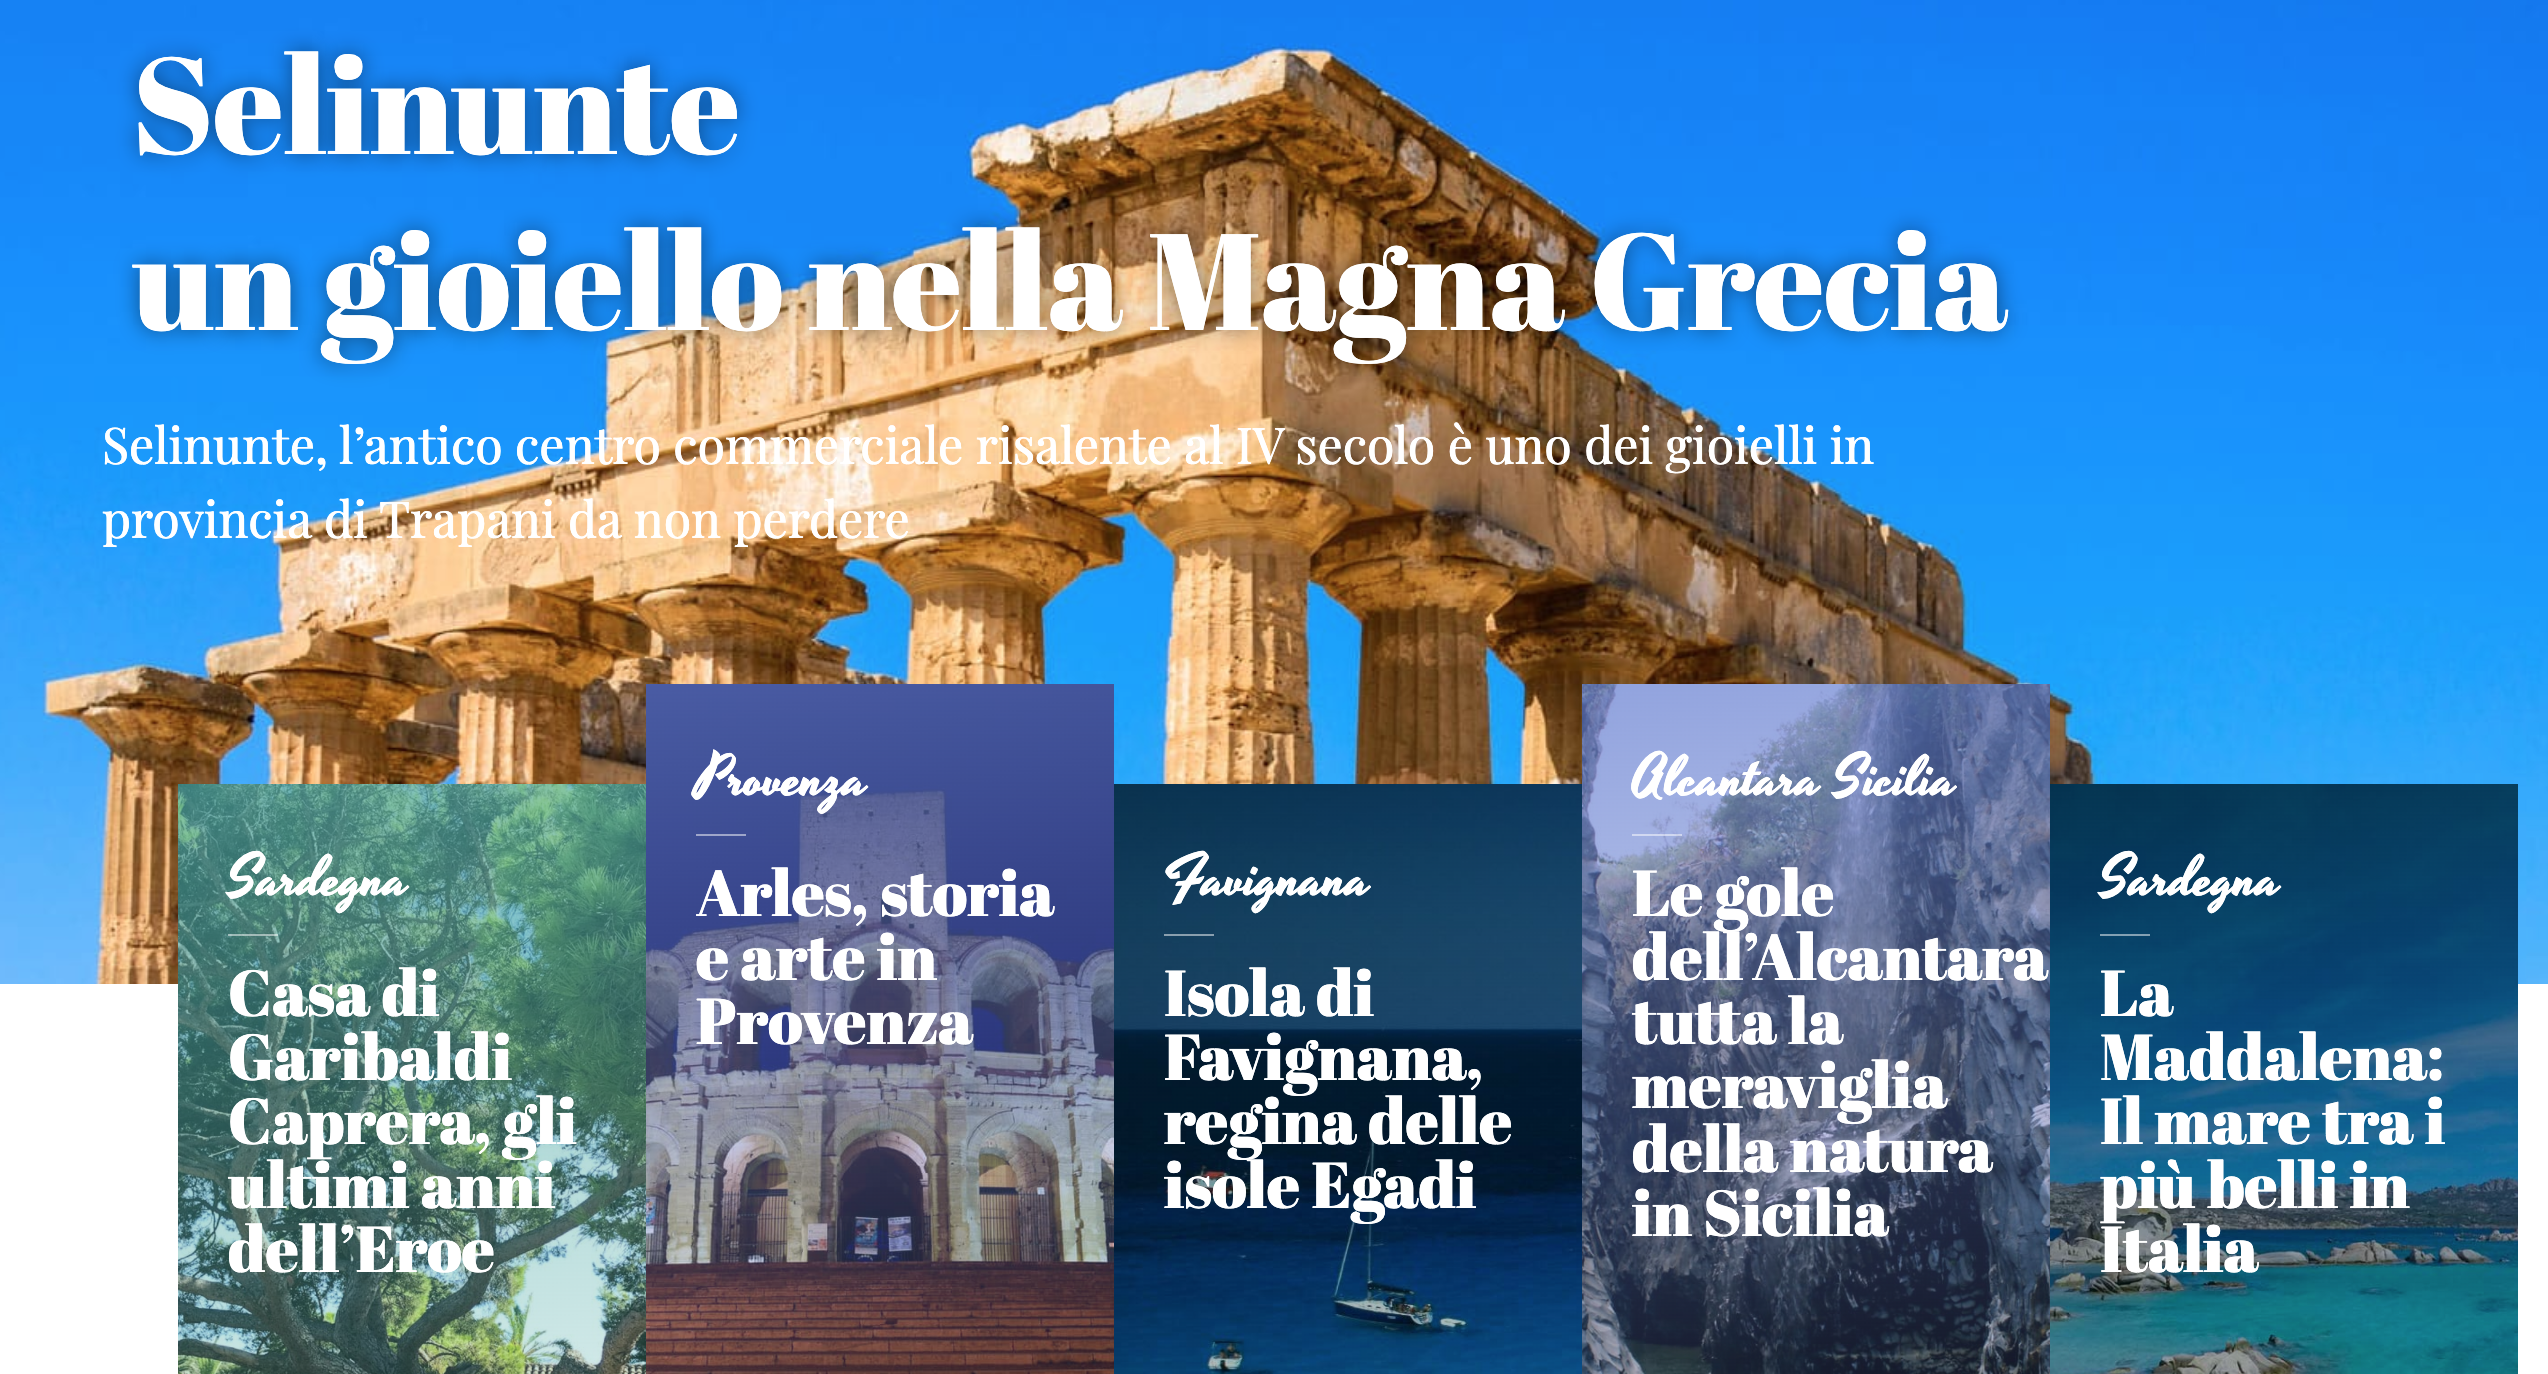 Un nuovo Blog di viaggi in Italia: Dovevado.net